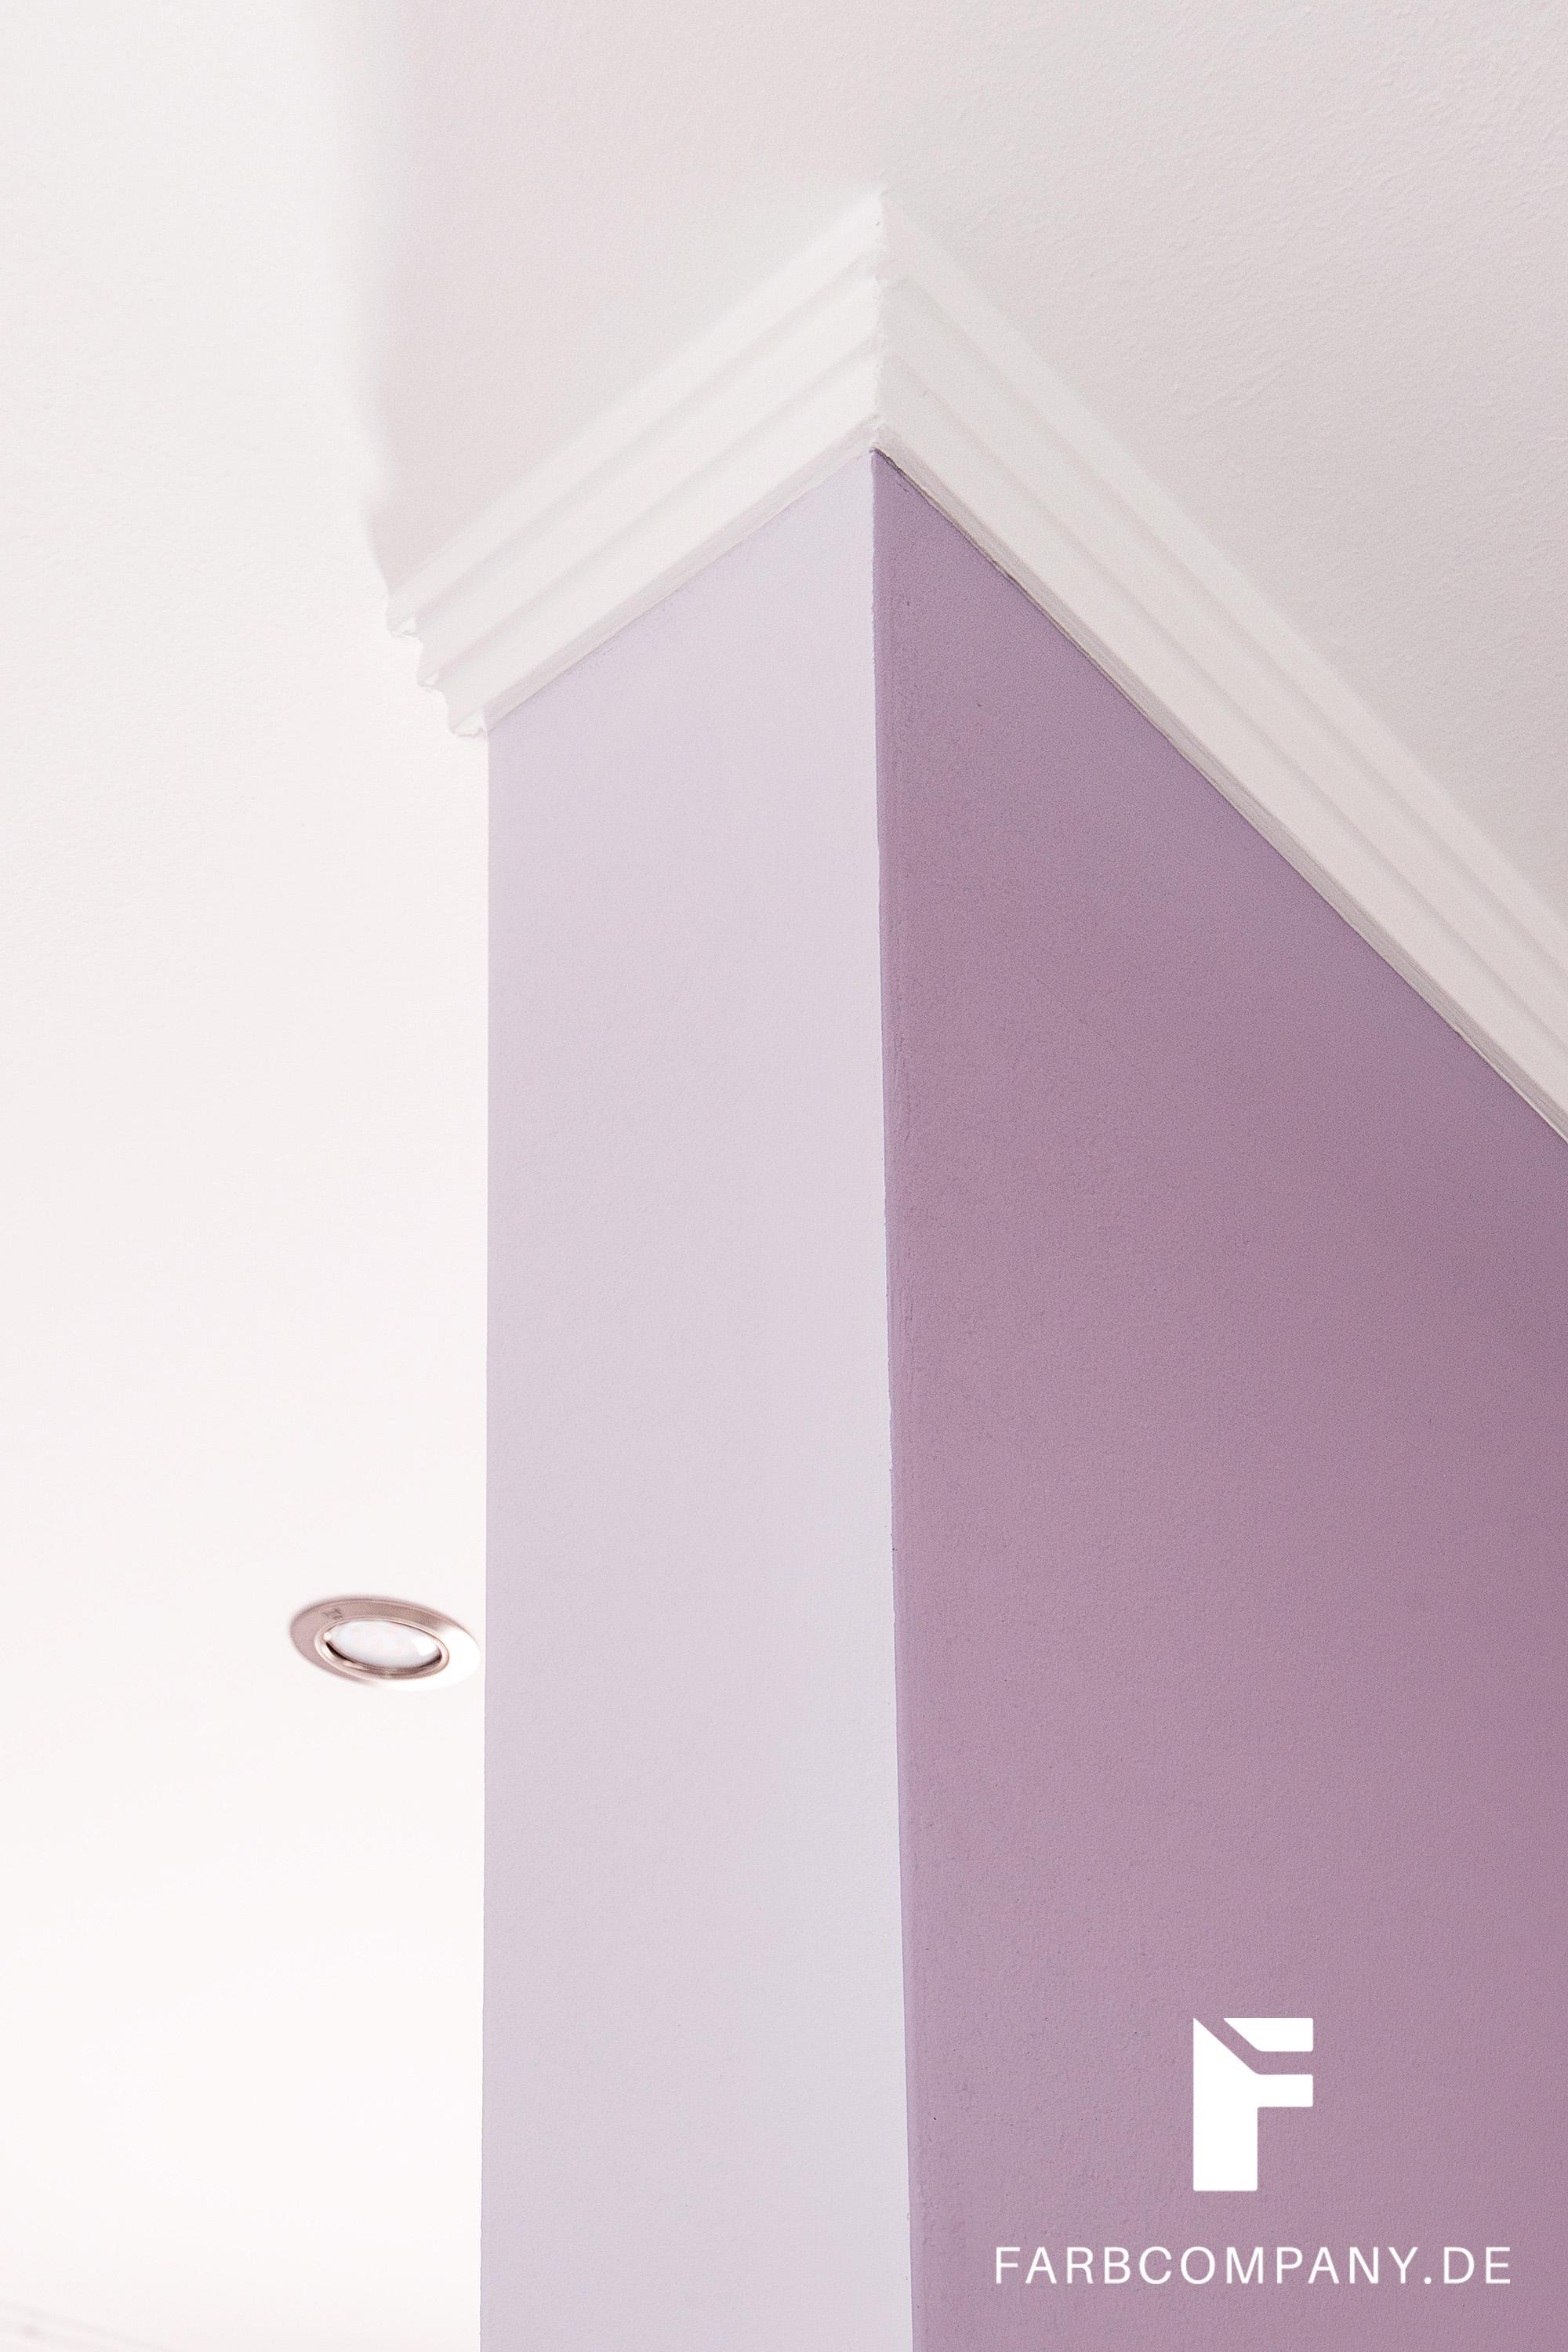 Raumgestaltung/ Schlafzimmer in angenehmen, pastelligen Farbtönen #wandfarbe ©Farbcompany/ Mike Schleupner